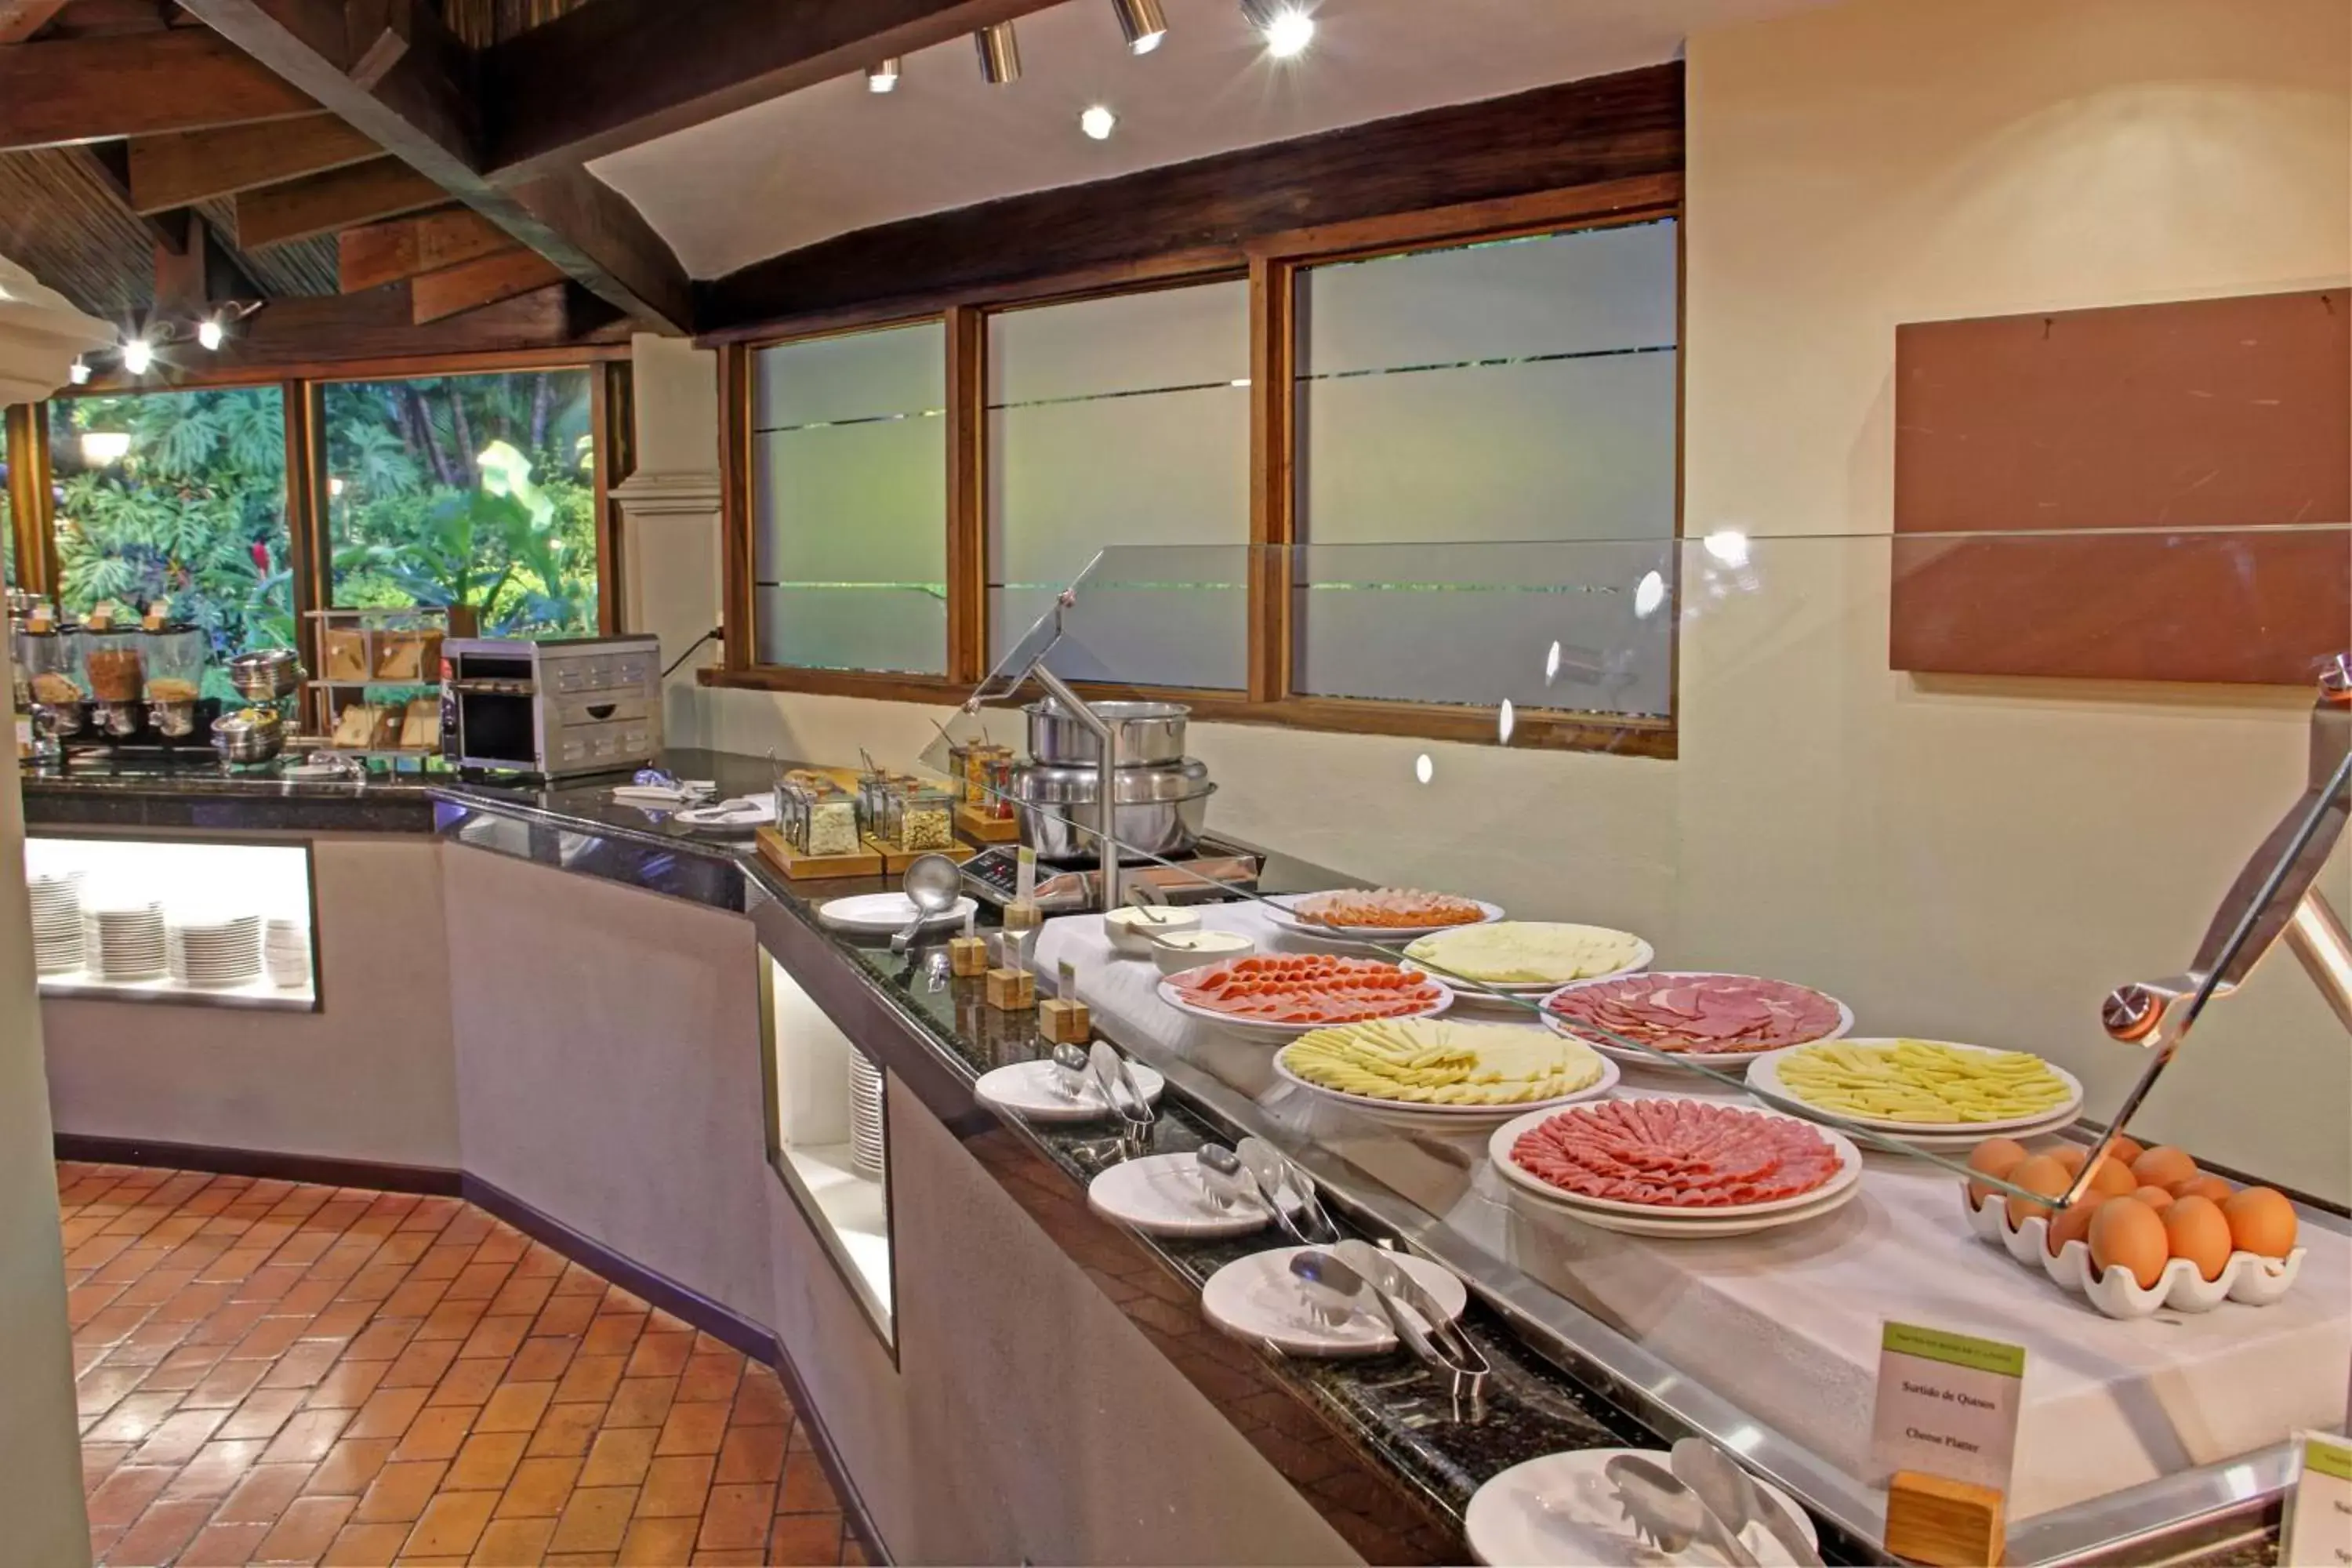 Breakfast in Hilton Cariari DoubleTree San Jose - Costa Rica